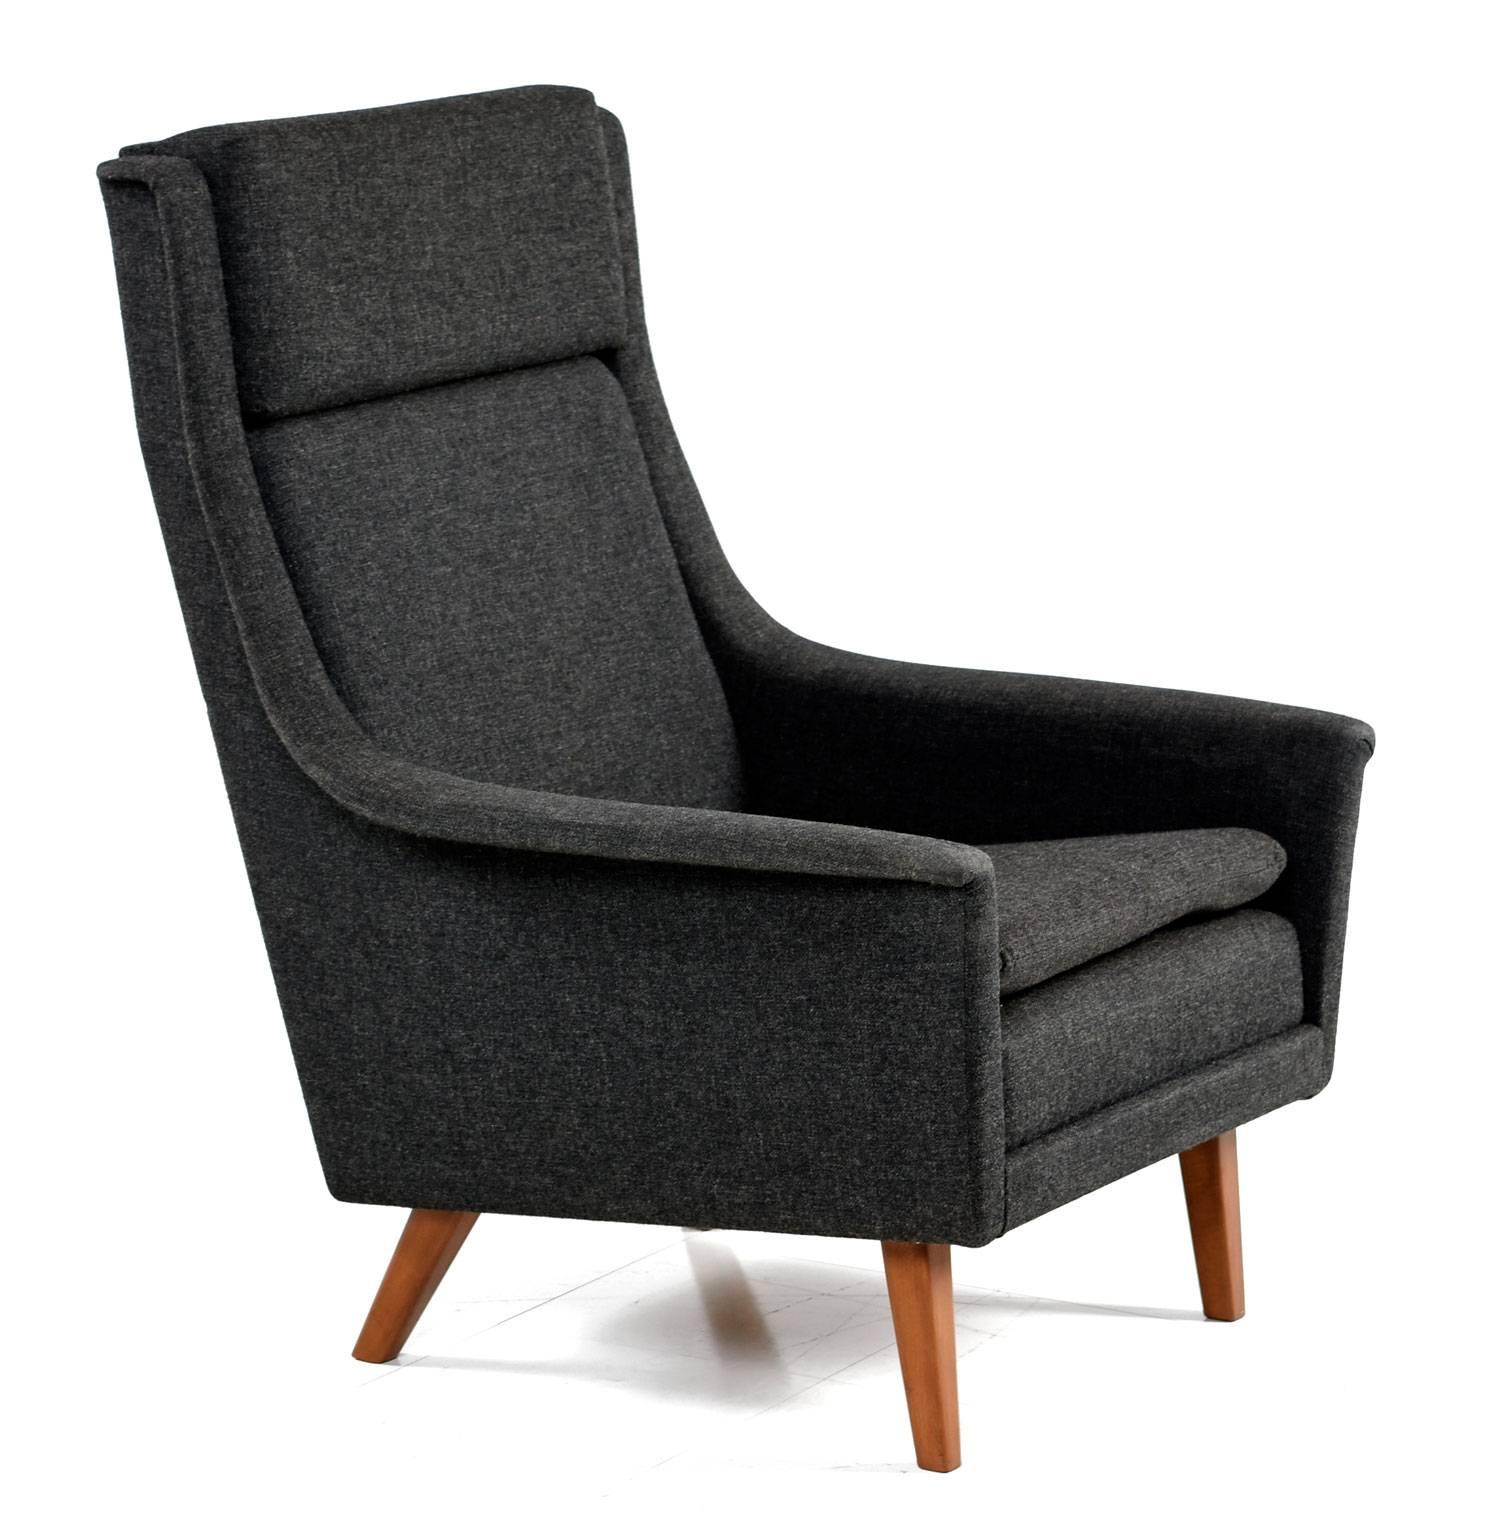 Danish Folke Ohlsson & Fritz Hansen Original Fabric Scandinavian Modern Lounge Chair